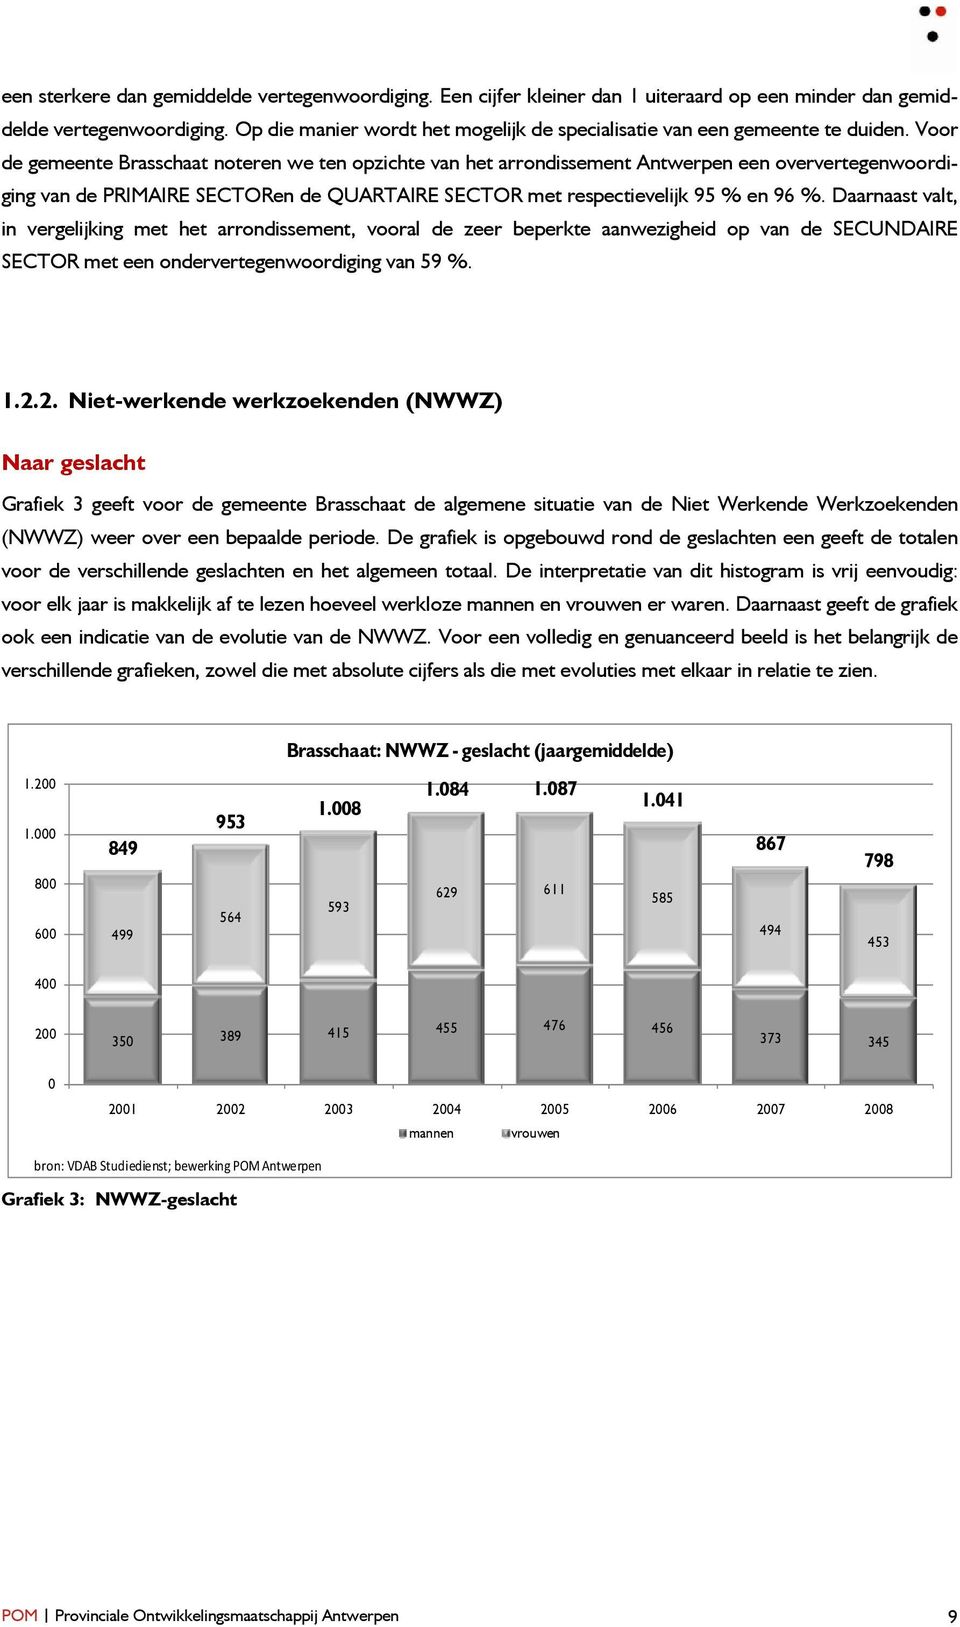 Voor de gemeente Brasschaat noteren we ten opzichte van het arrondissement Antwerpen een oververtegenwoordiging van de PRIMAIRE SECTORen de QUARTAIRE SECTOR met respectievelijk 95 % en 96 %.